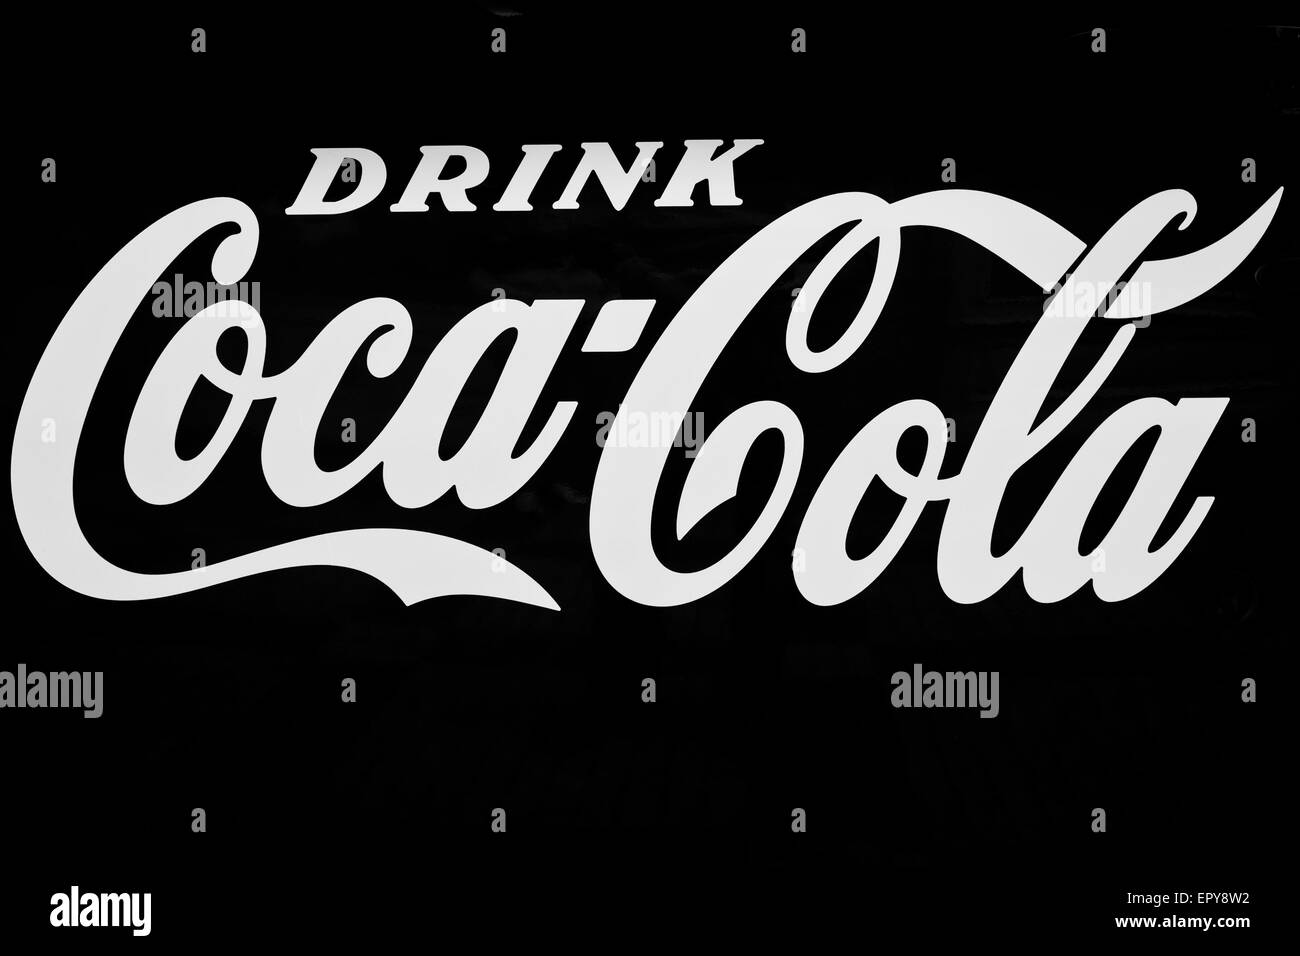 coca cola logo white on black Stock Photo